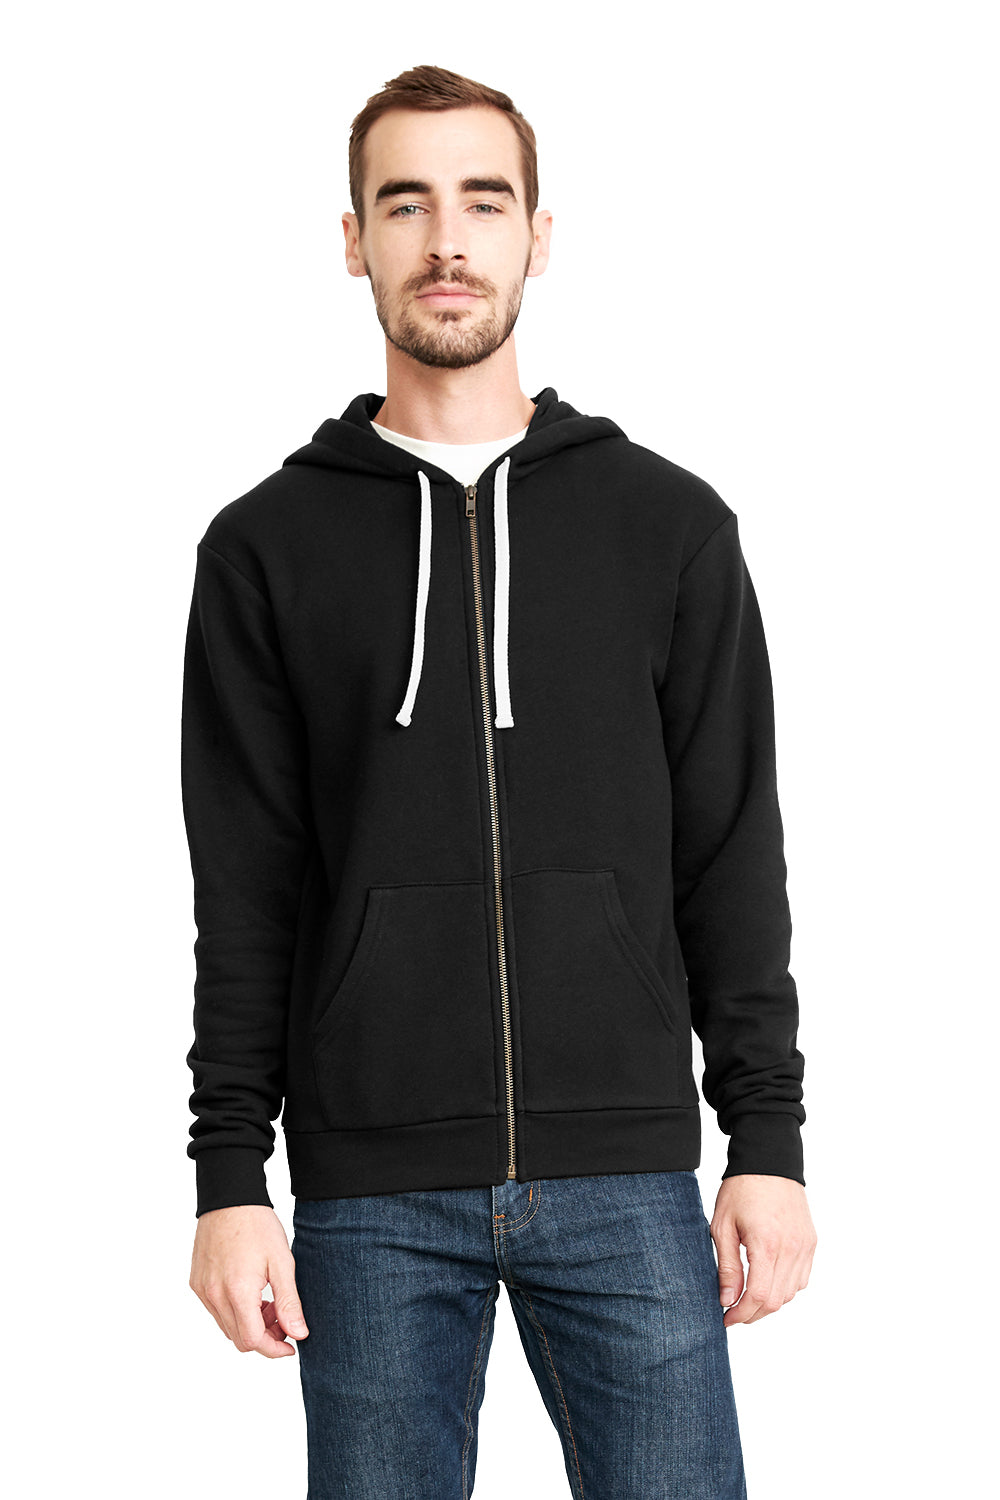 Next Level NL9602/9602 Mens Black Fleece Full Zip Hooded Sweatshirt ...